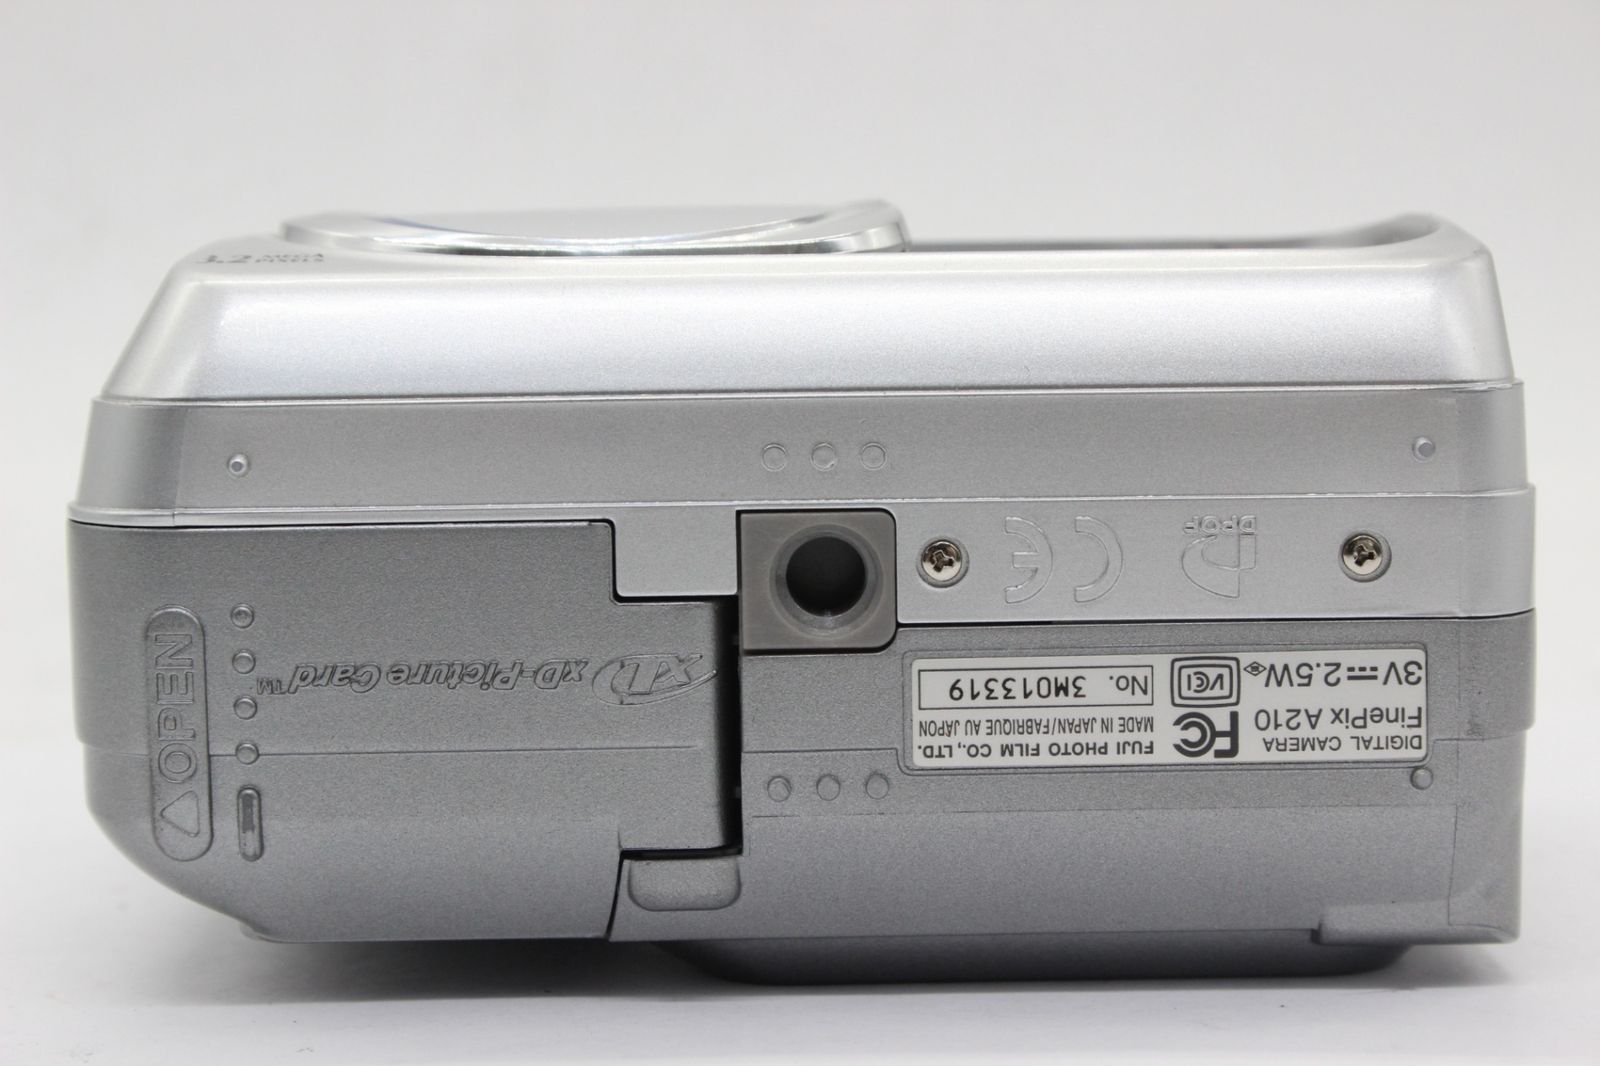 【返品保証】 【便利な単三電池で使用可】フジフィルム Fujifilm Finepix A210 3x コンパクトデジタルカメラ s9383